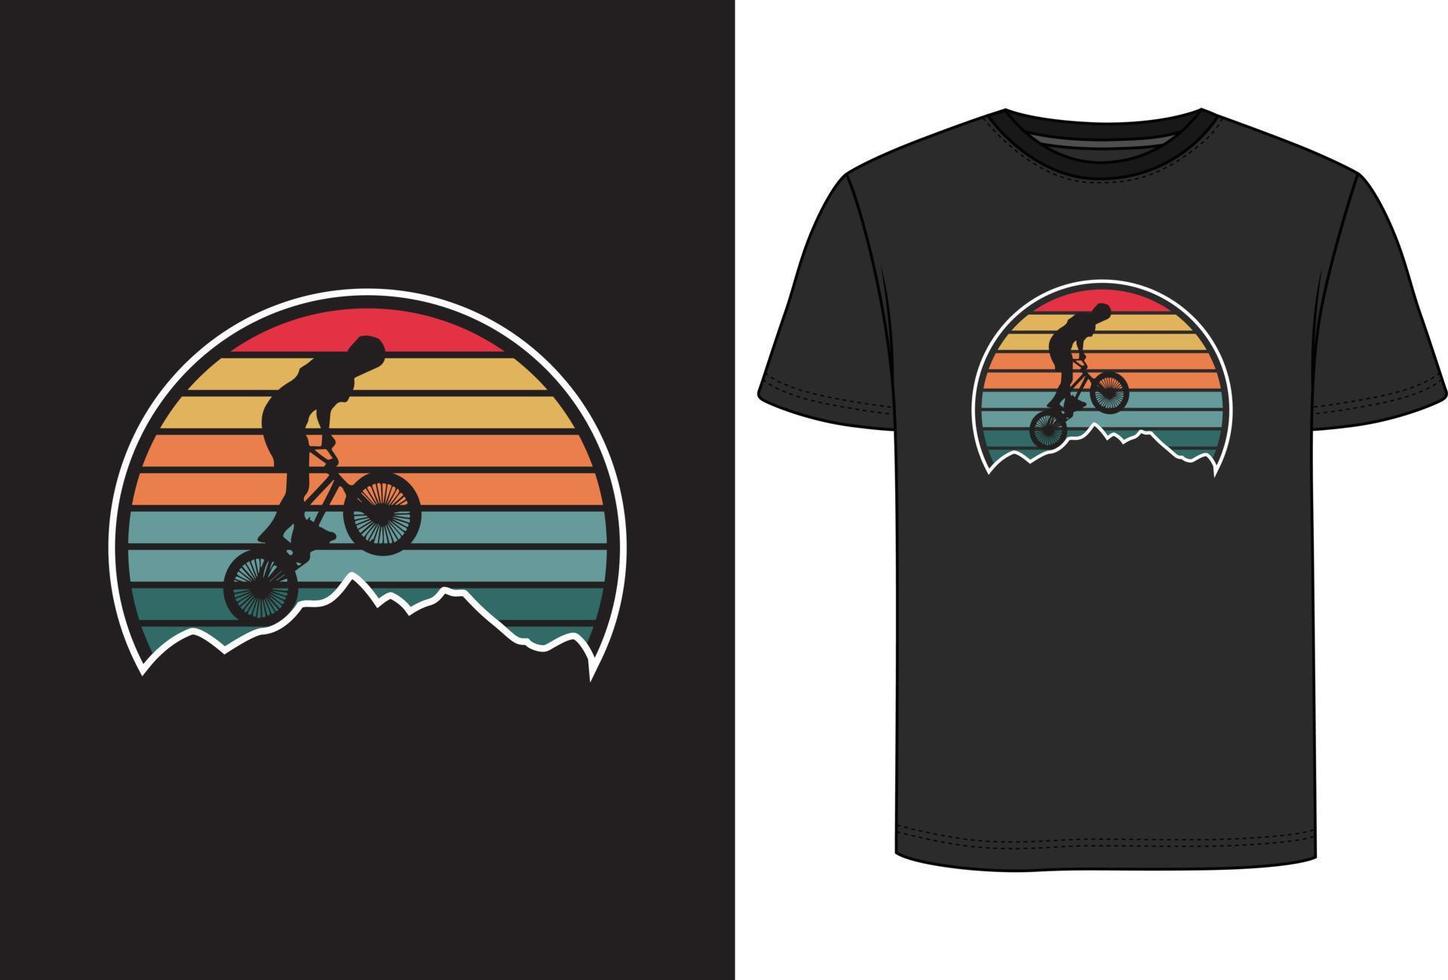 design della maglietta della bicicletta vettore